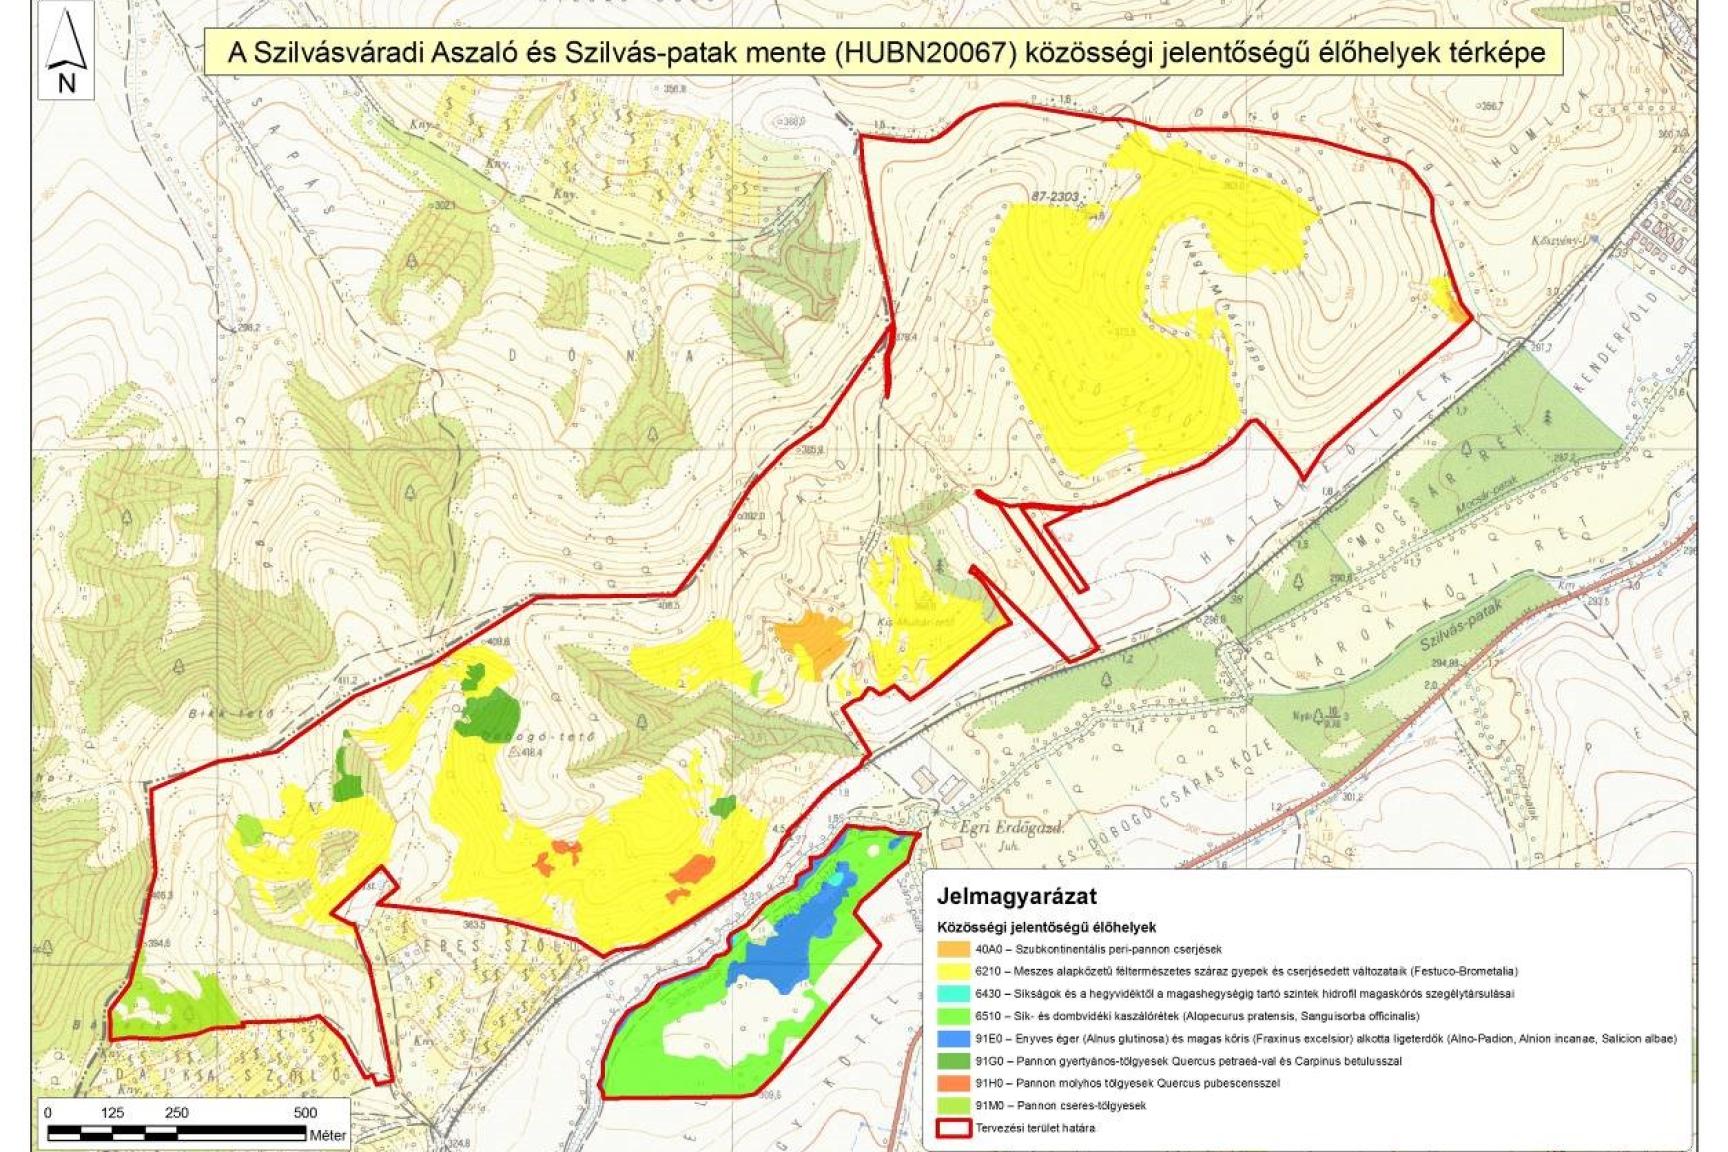 9. A tervezési terület közösségi jelentőségű (Natura 2000) élőhelytérképe